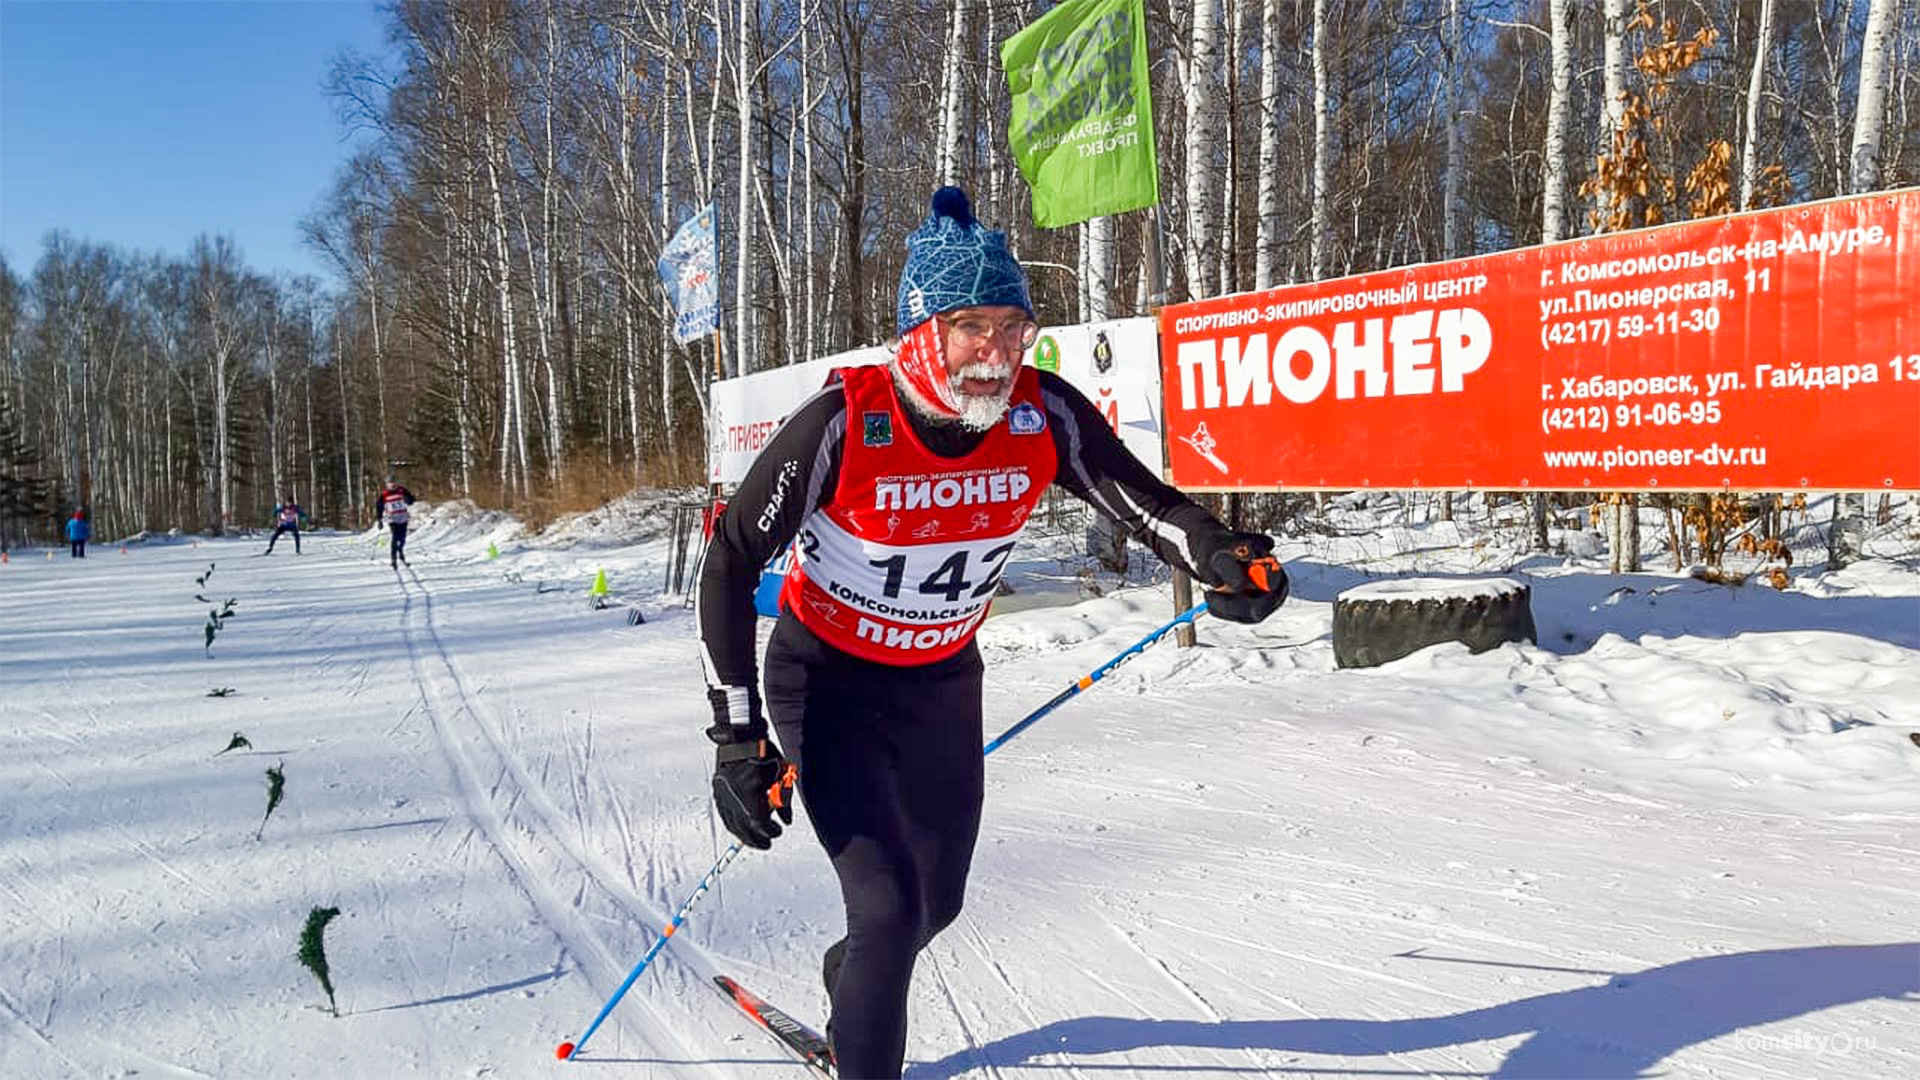 Более 200 лыжников отметили День зимних видов спорта в Комсомольске-на-Амуре